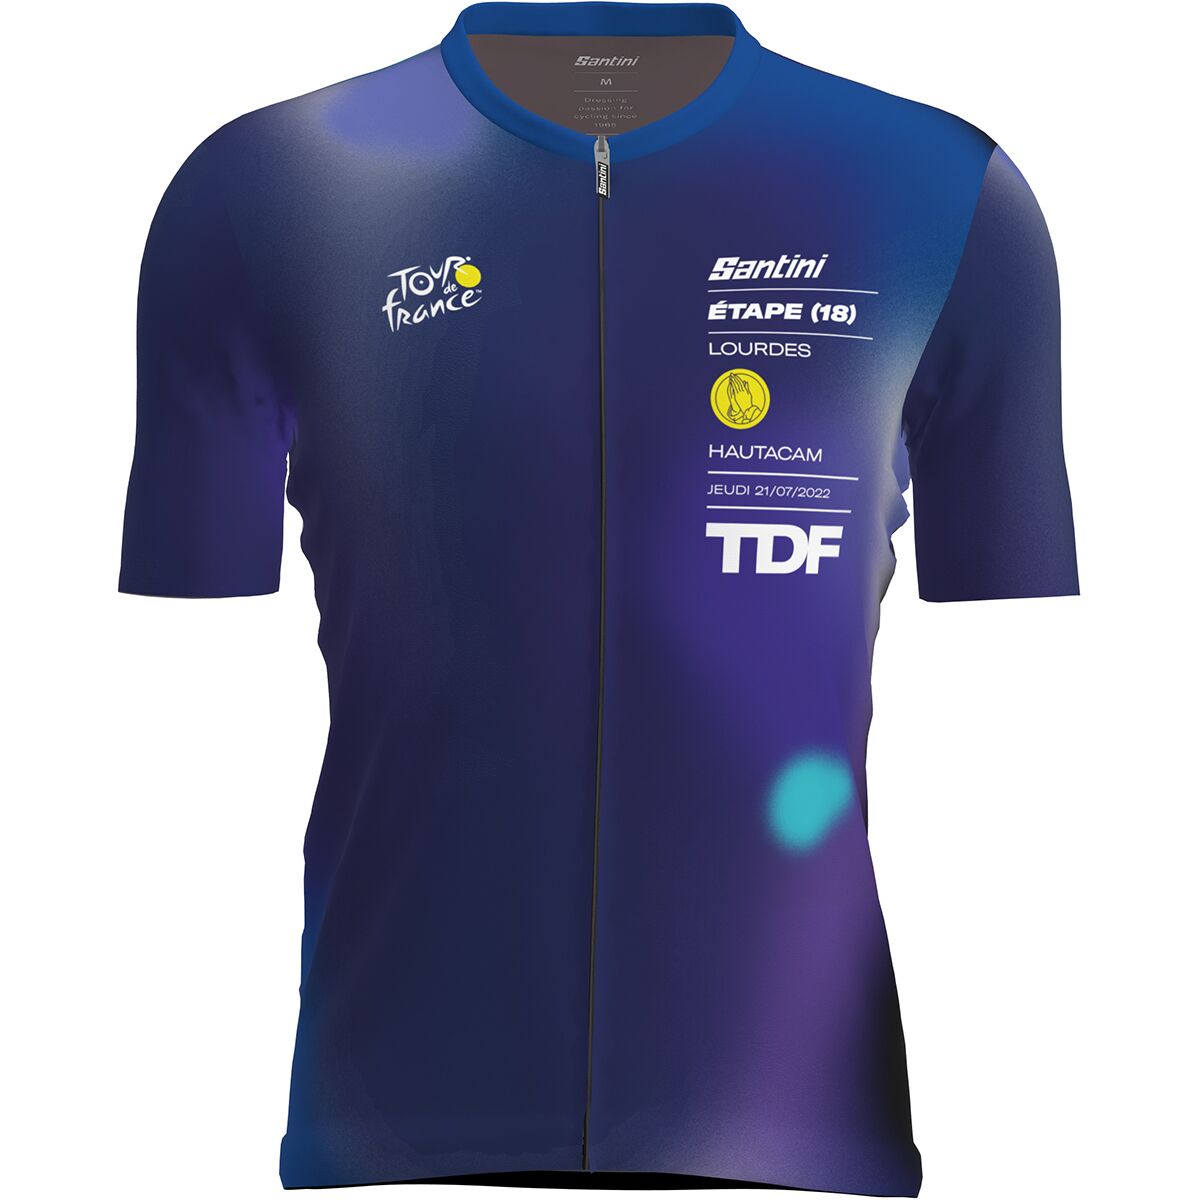 Santini Tour de France Official Lourdes Cycling Jersey - Men's